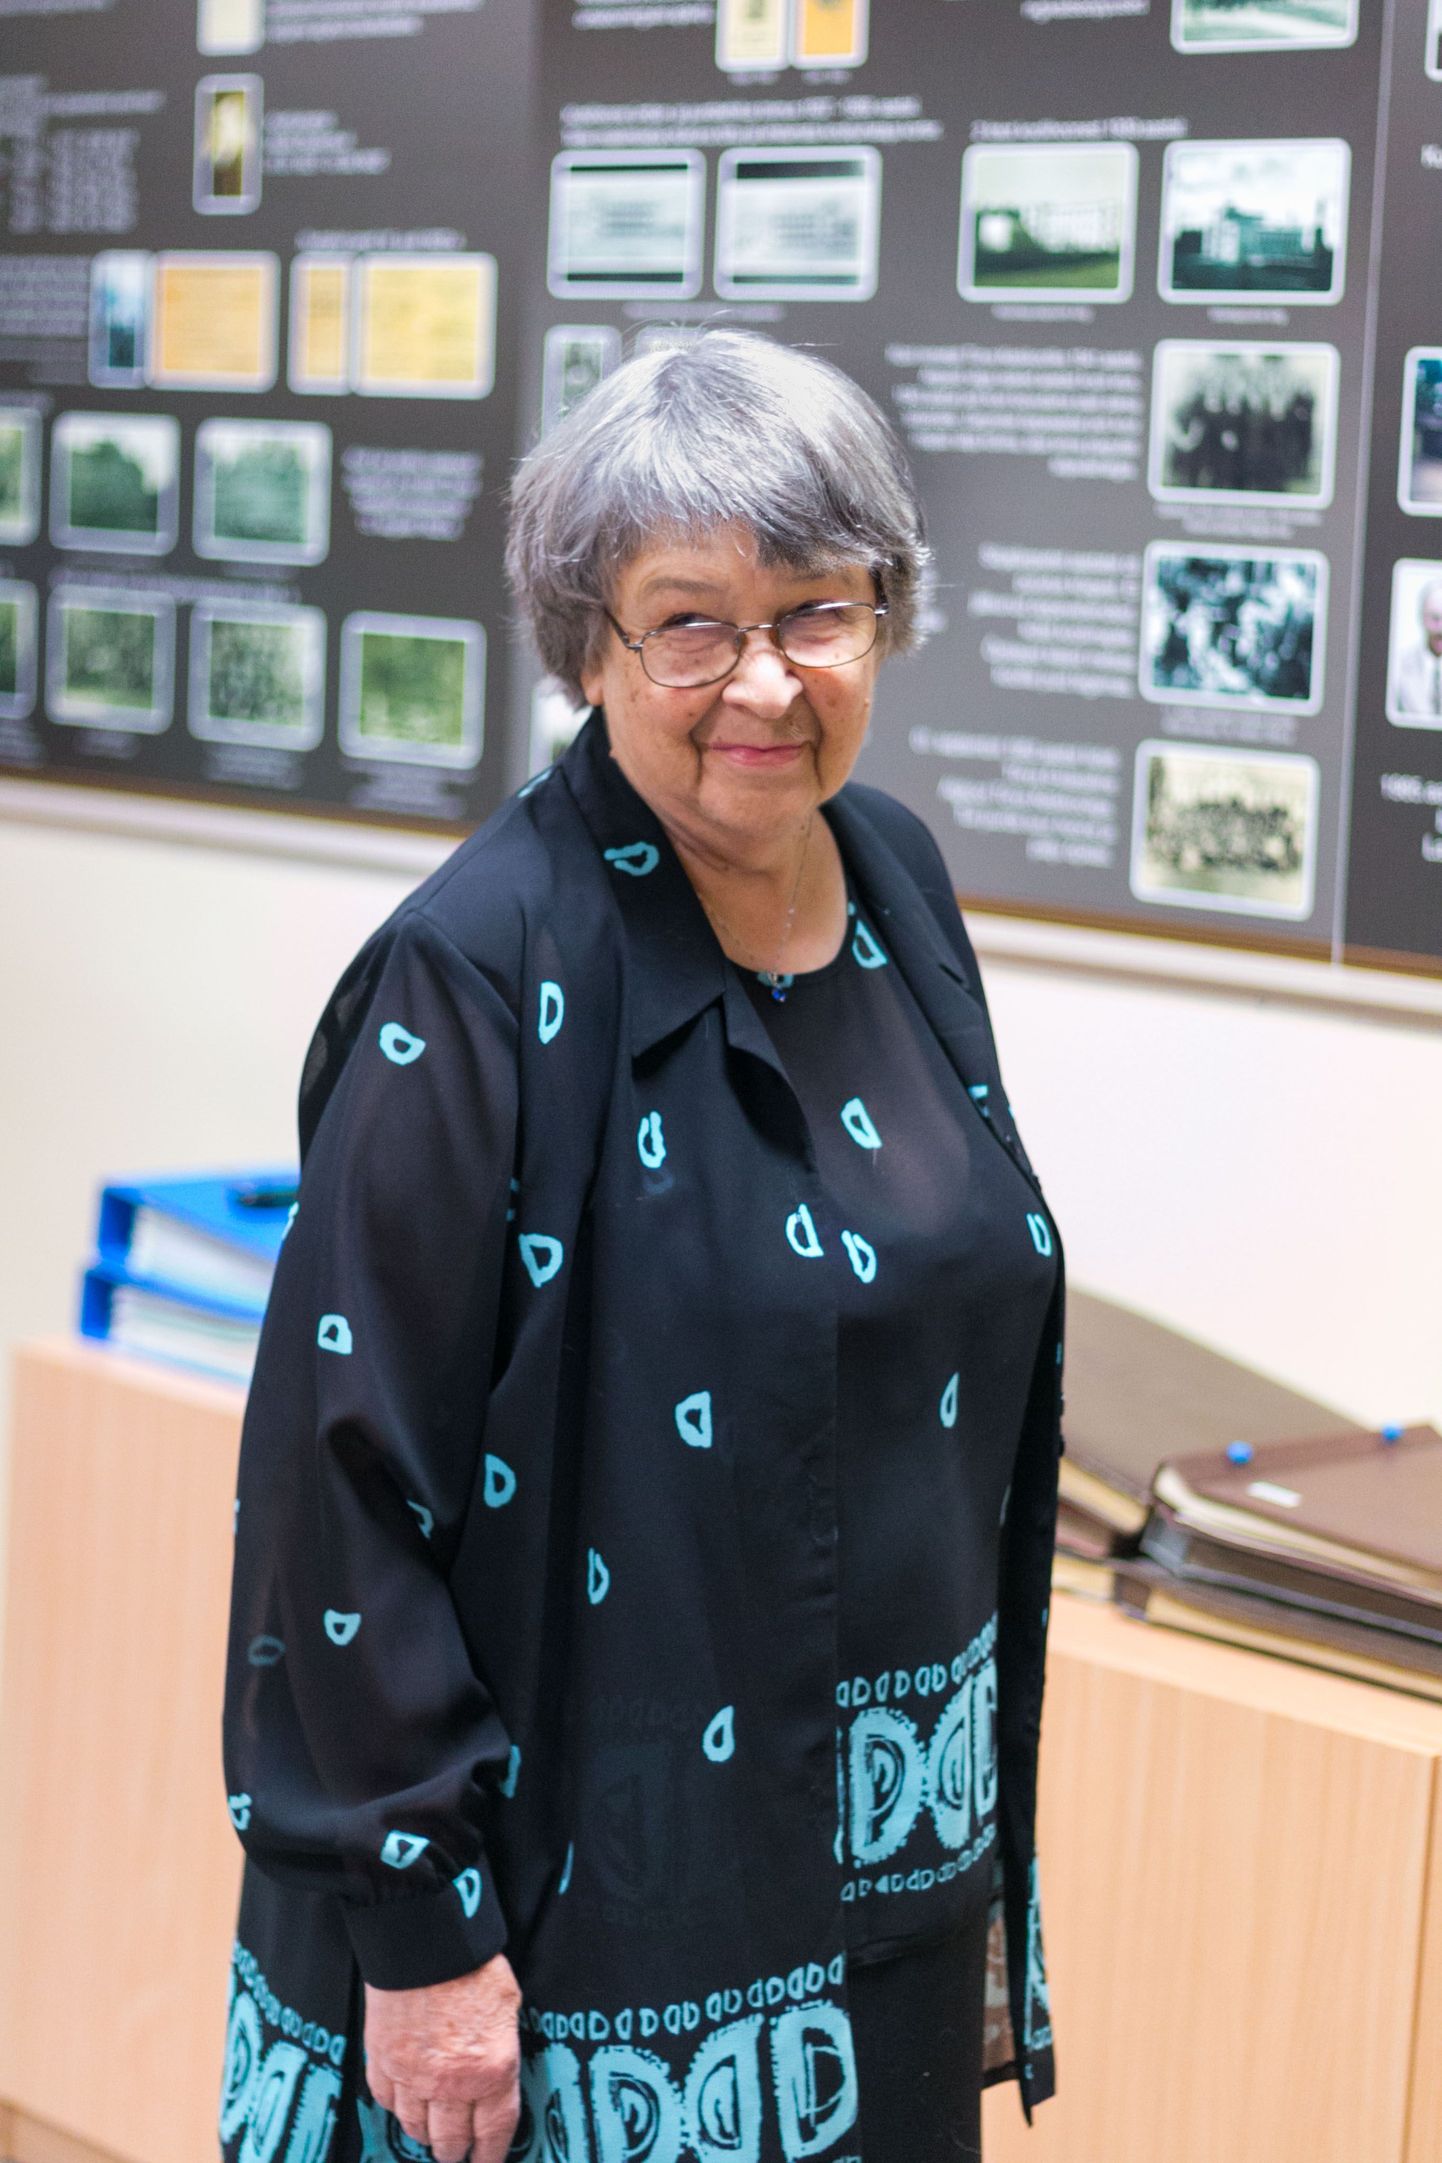 Teenekas Tõrva gümnaasiumi õpetaja ja raamatukoguhoidja Hilma Karu on üks kolmest kagueestlasest, kes saab kodanikupäeva puhul siseministrilt aumärgi.